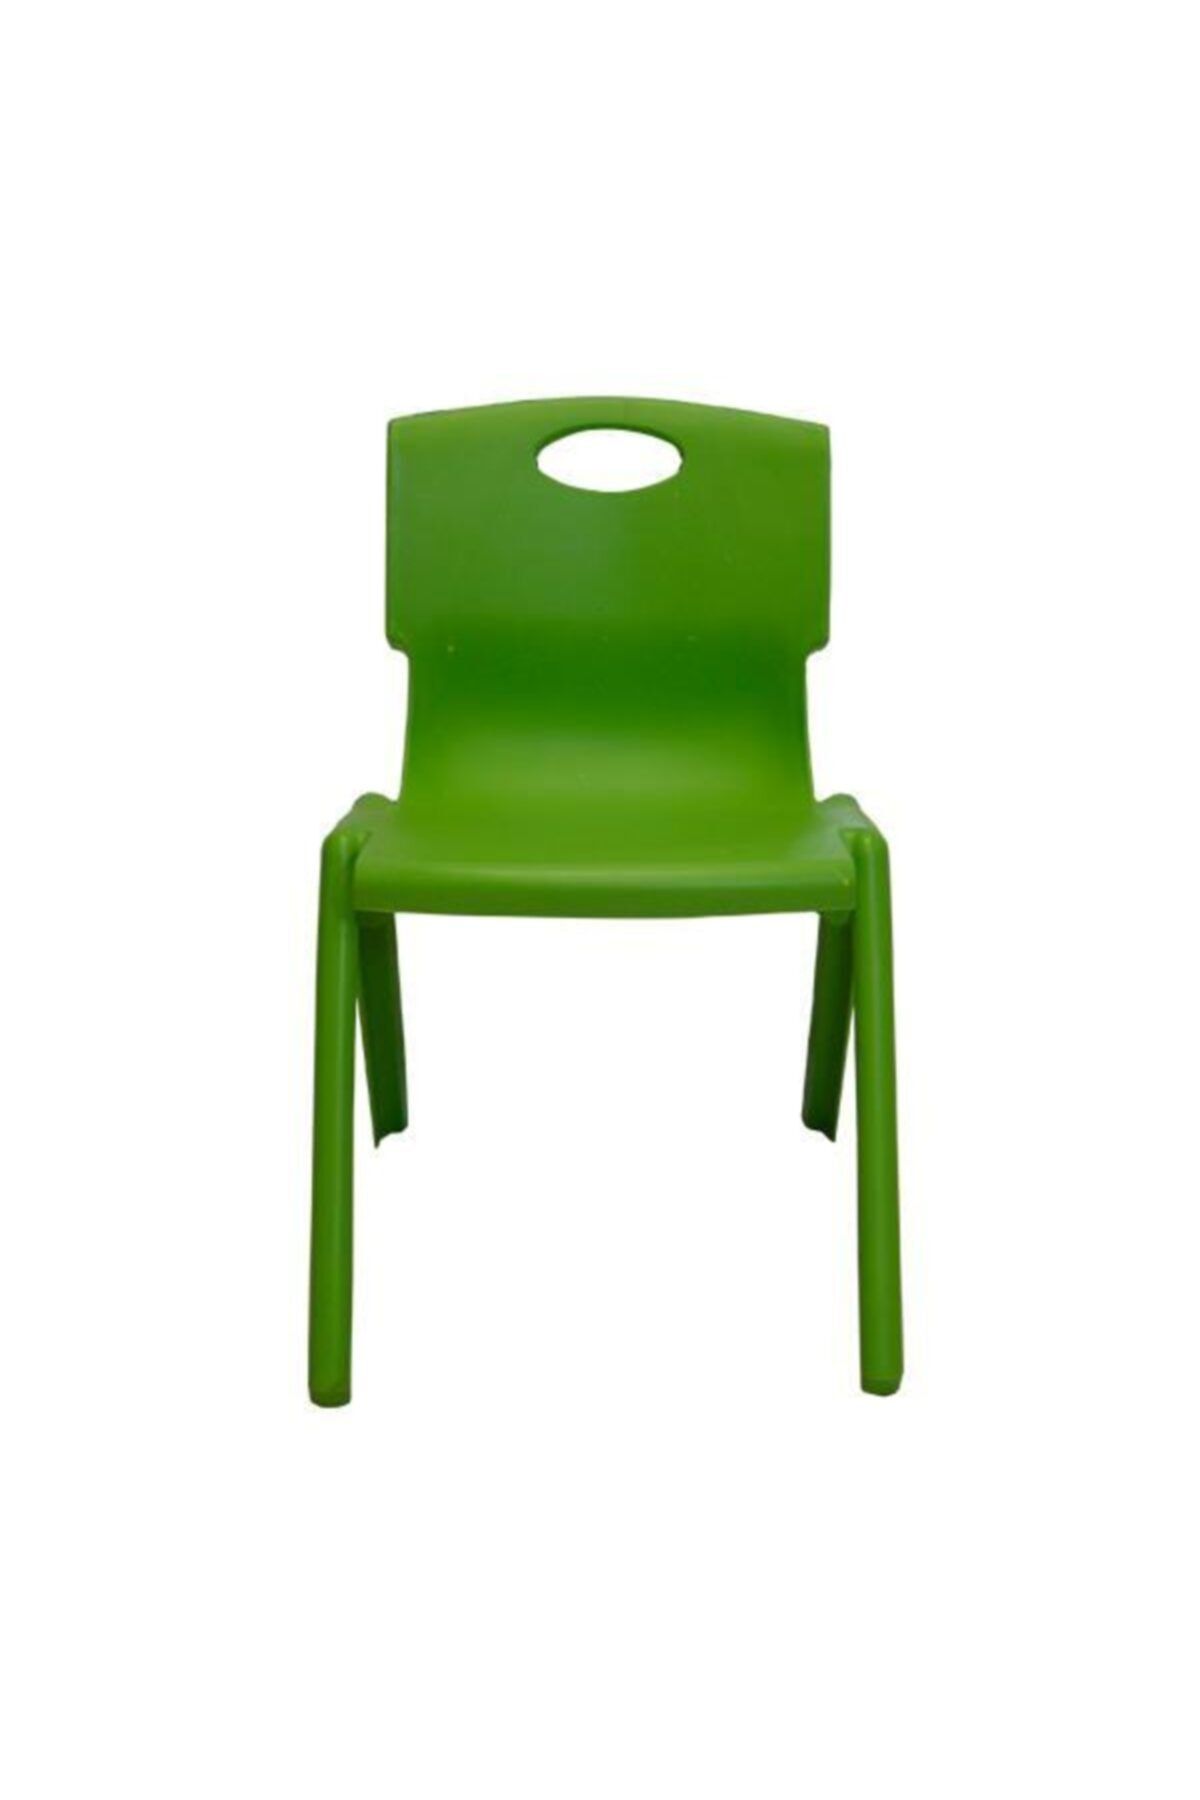 Temel Yeşil Kırılmaz Çocuk Sandalyesi - Kreş Ve Anaokulu Sandalyesi 1 Adet